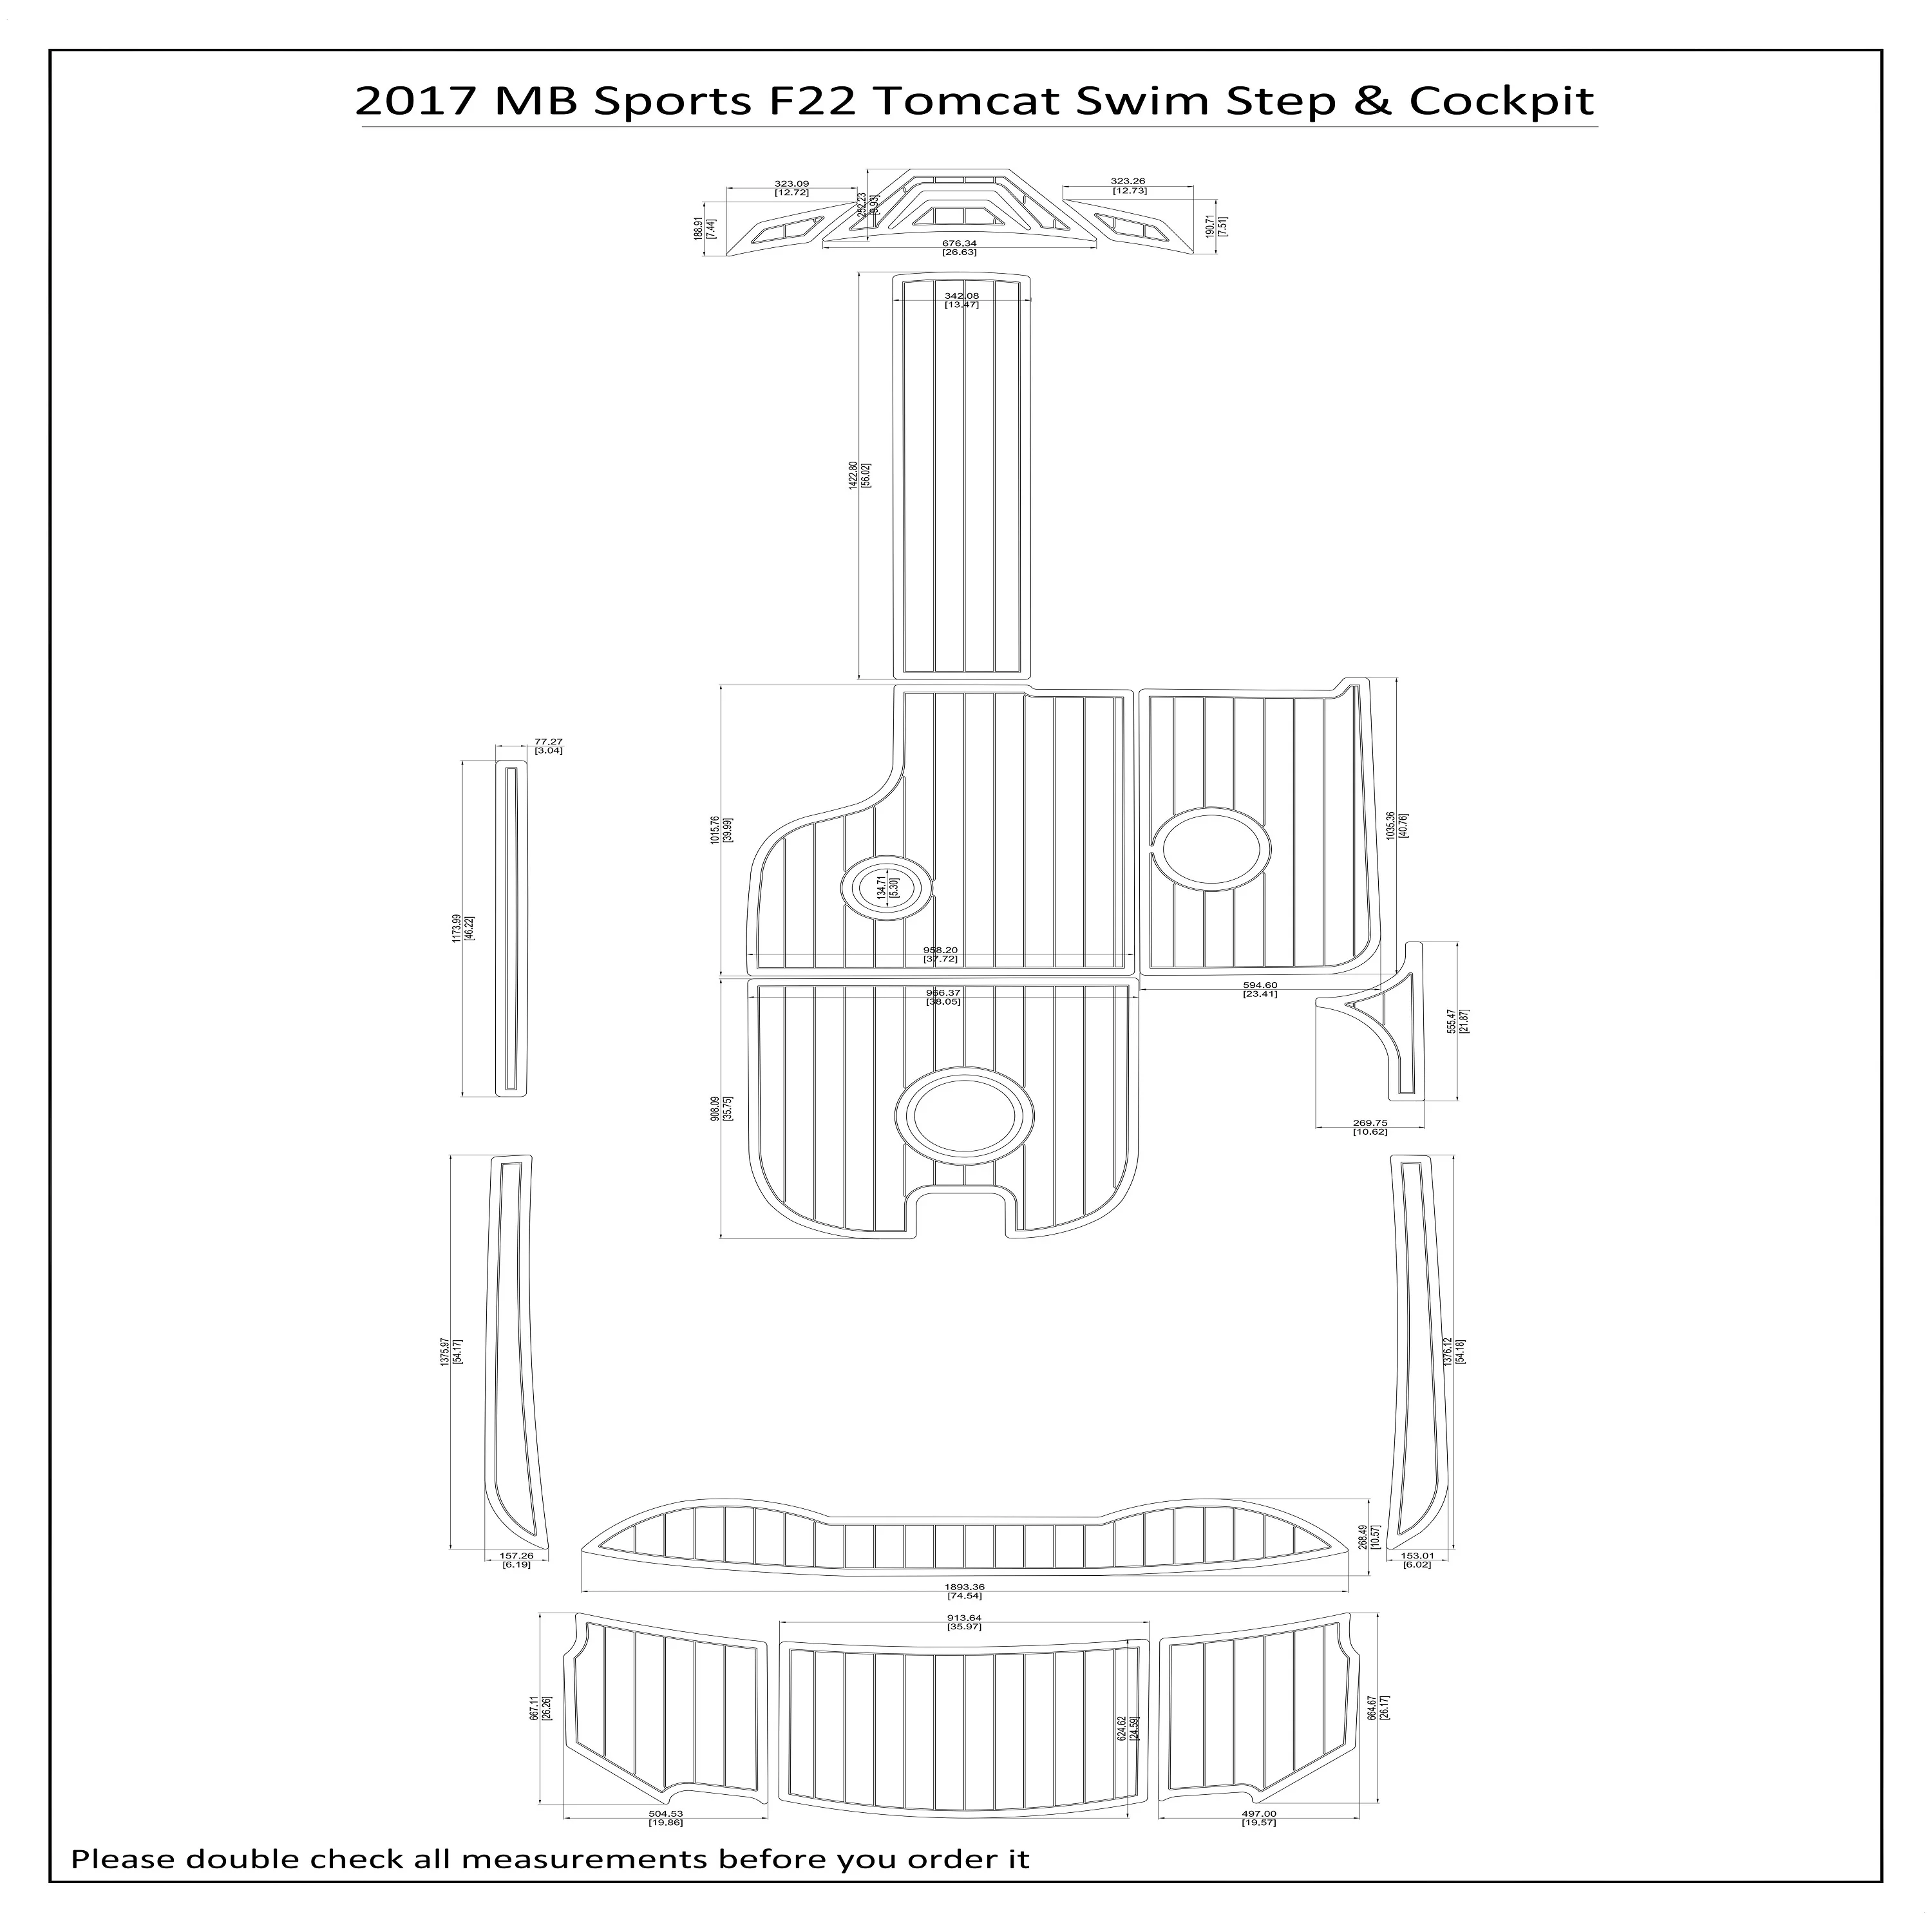 2017 MB Sports F22 Tomcat плавательный шаг кабина лодка EVA пенопластовый Тиковый напольный